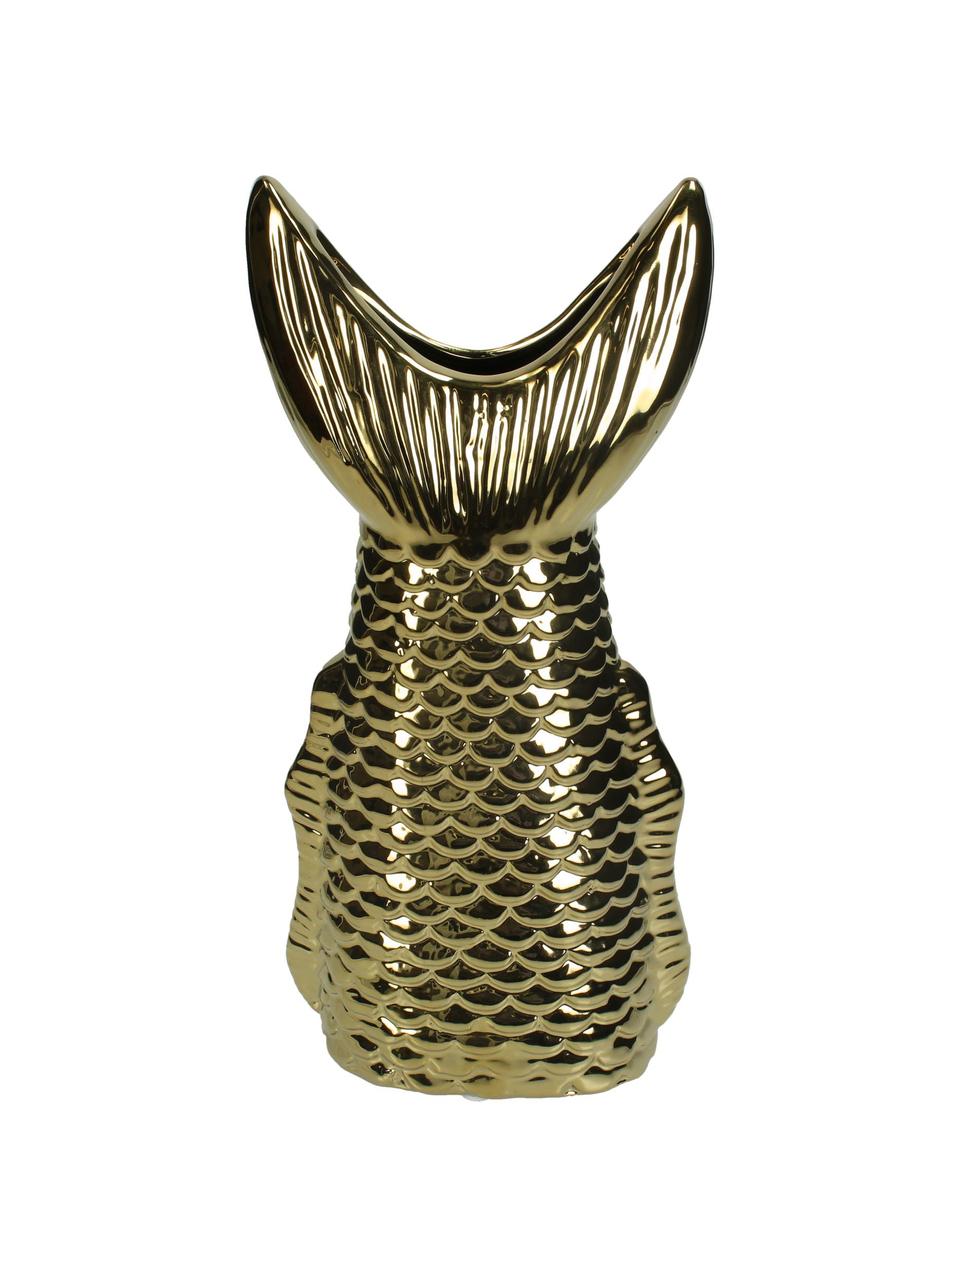 Kameninová váza Fishtail, Zlatá